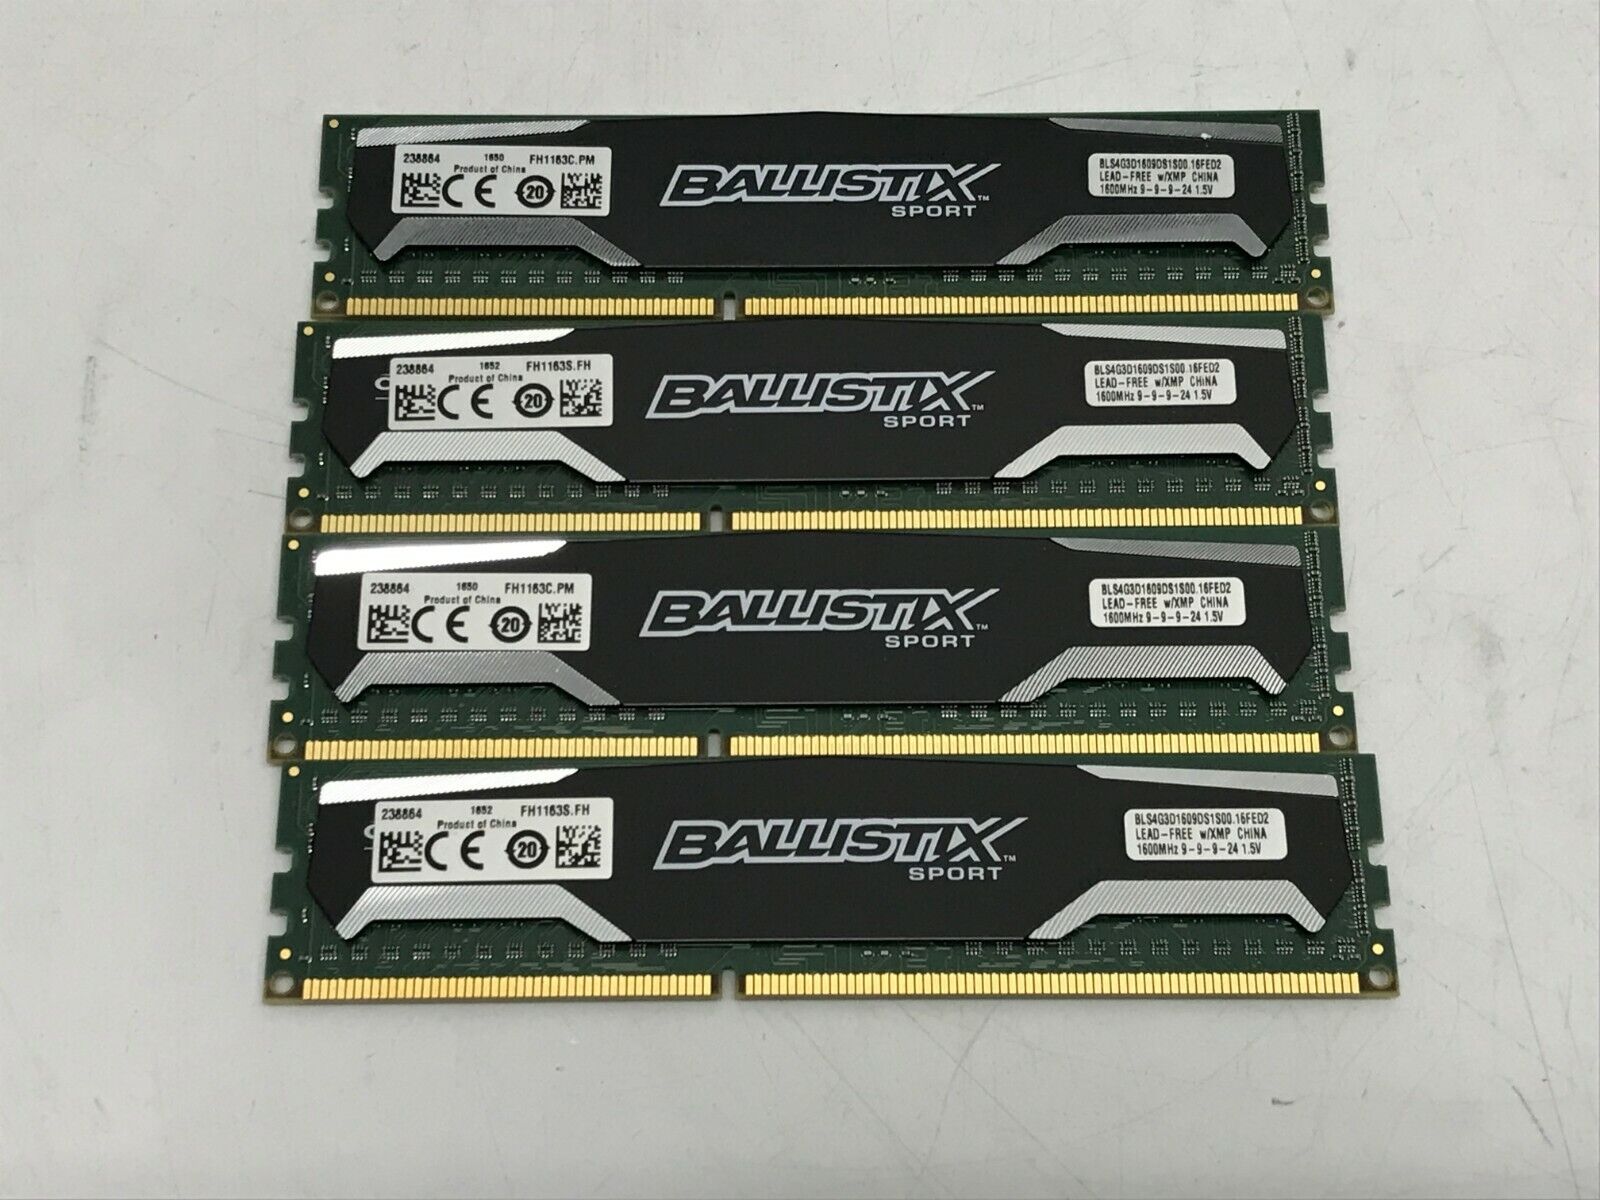 Crucial Ballistix 16GB (4x 4GB) DDR3 1600MHz CL9 RAM BLS4G3D1609DS1S00.16FED2